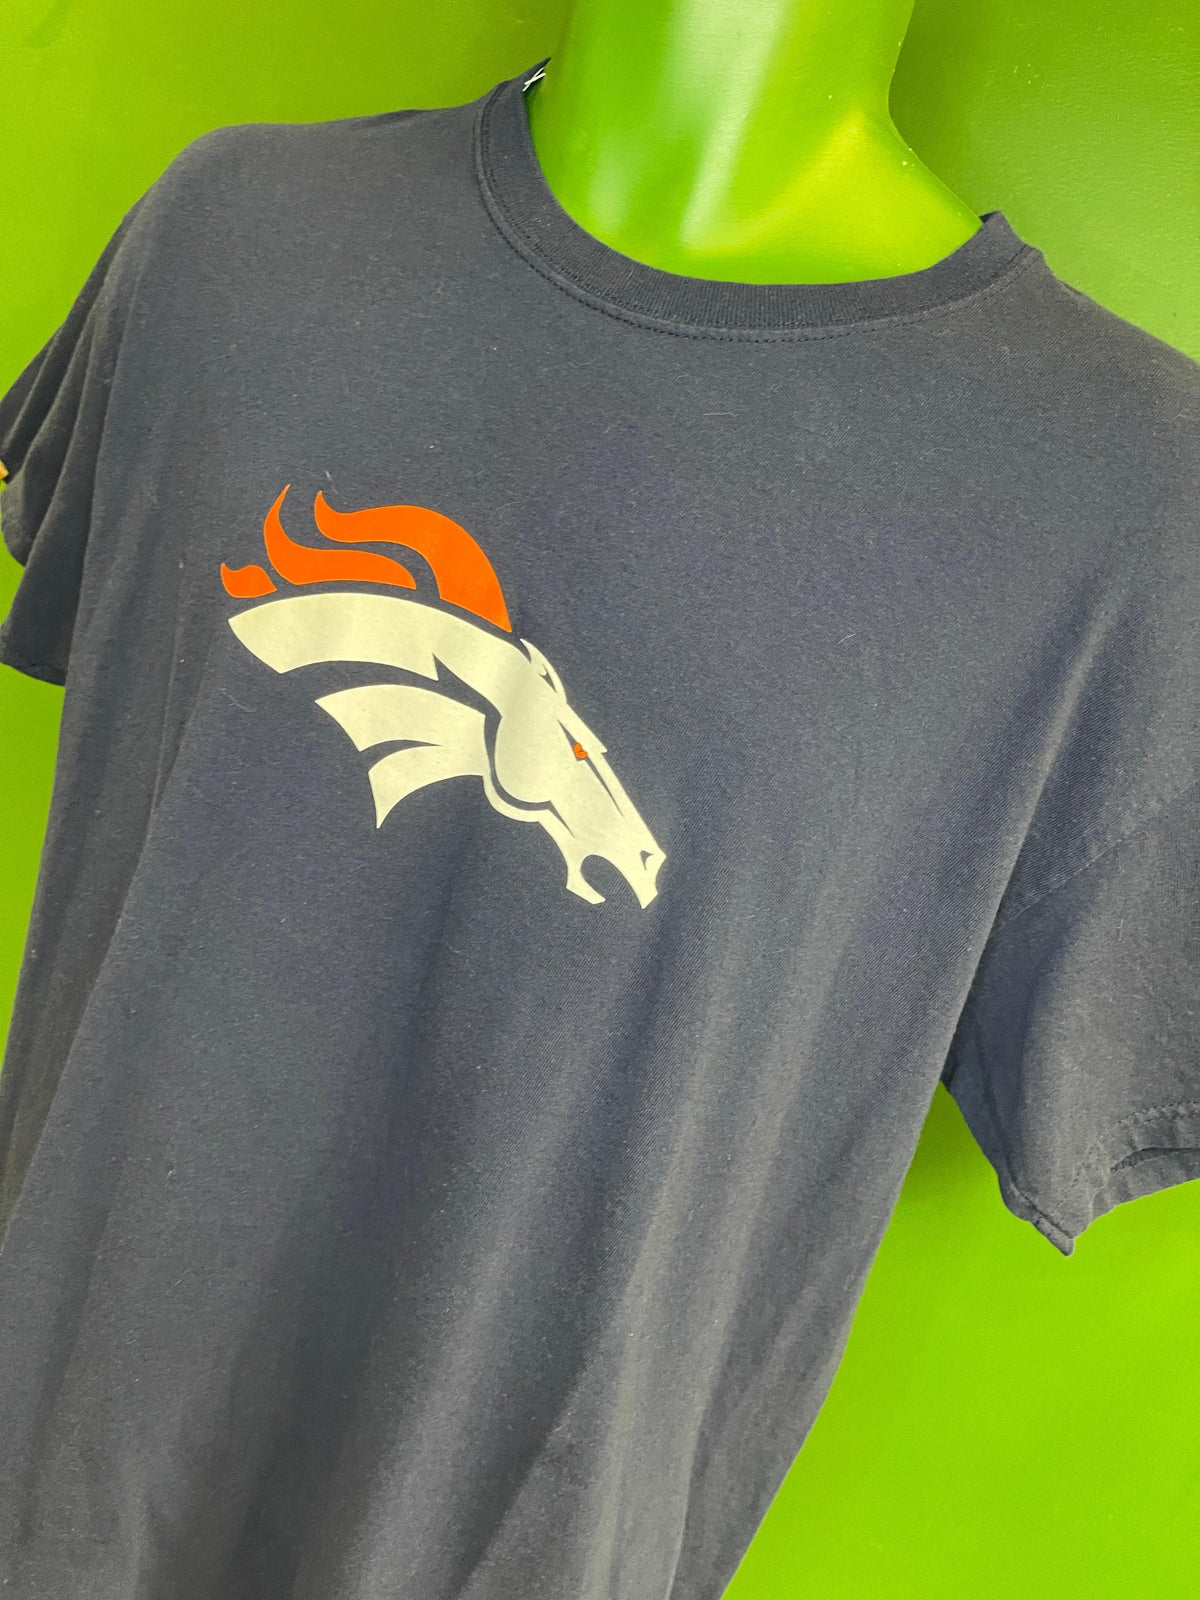 NFL Denver Broncos Dark Blue Logo T-Shirt 100% Cotton Men's Large